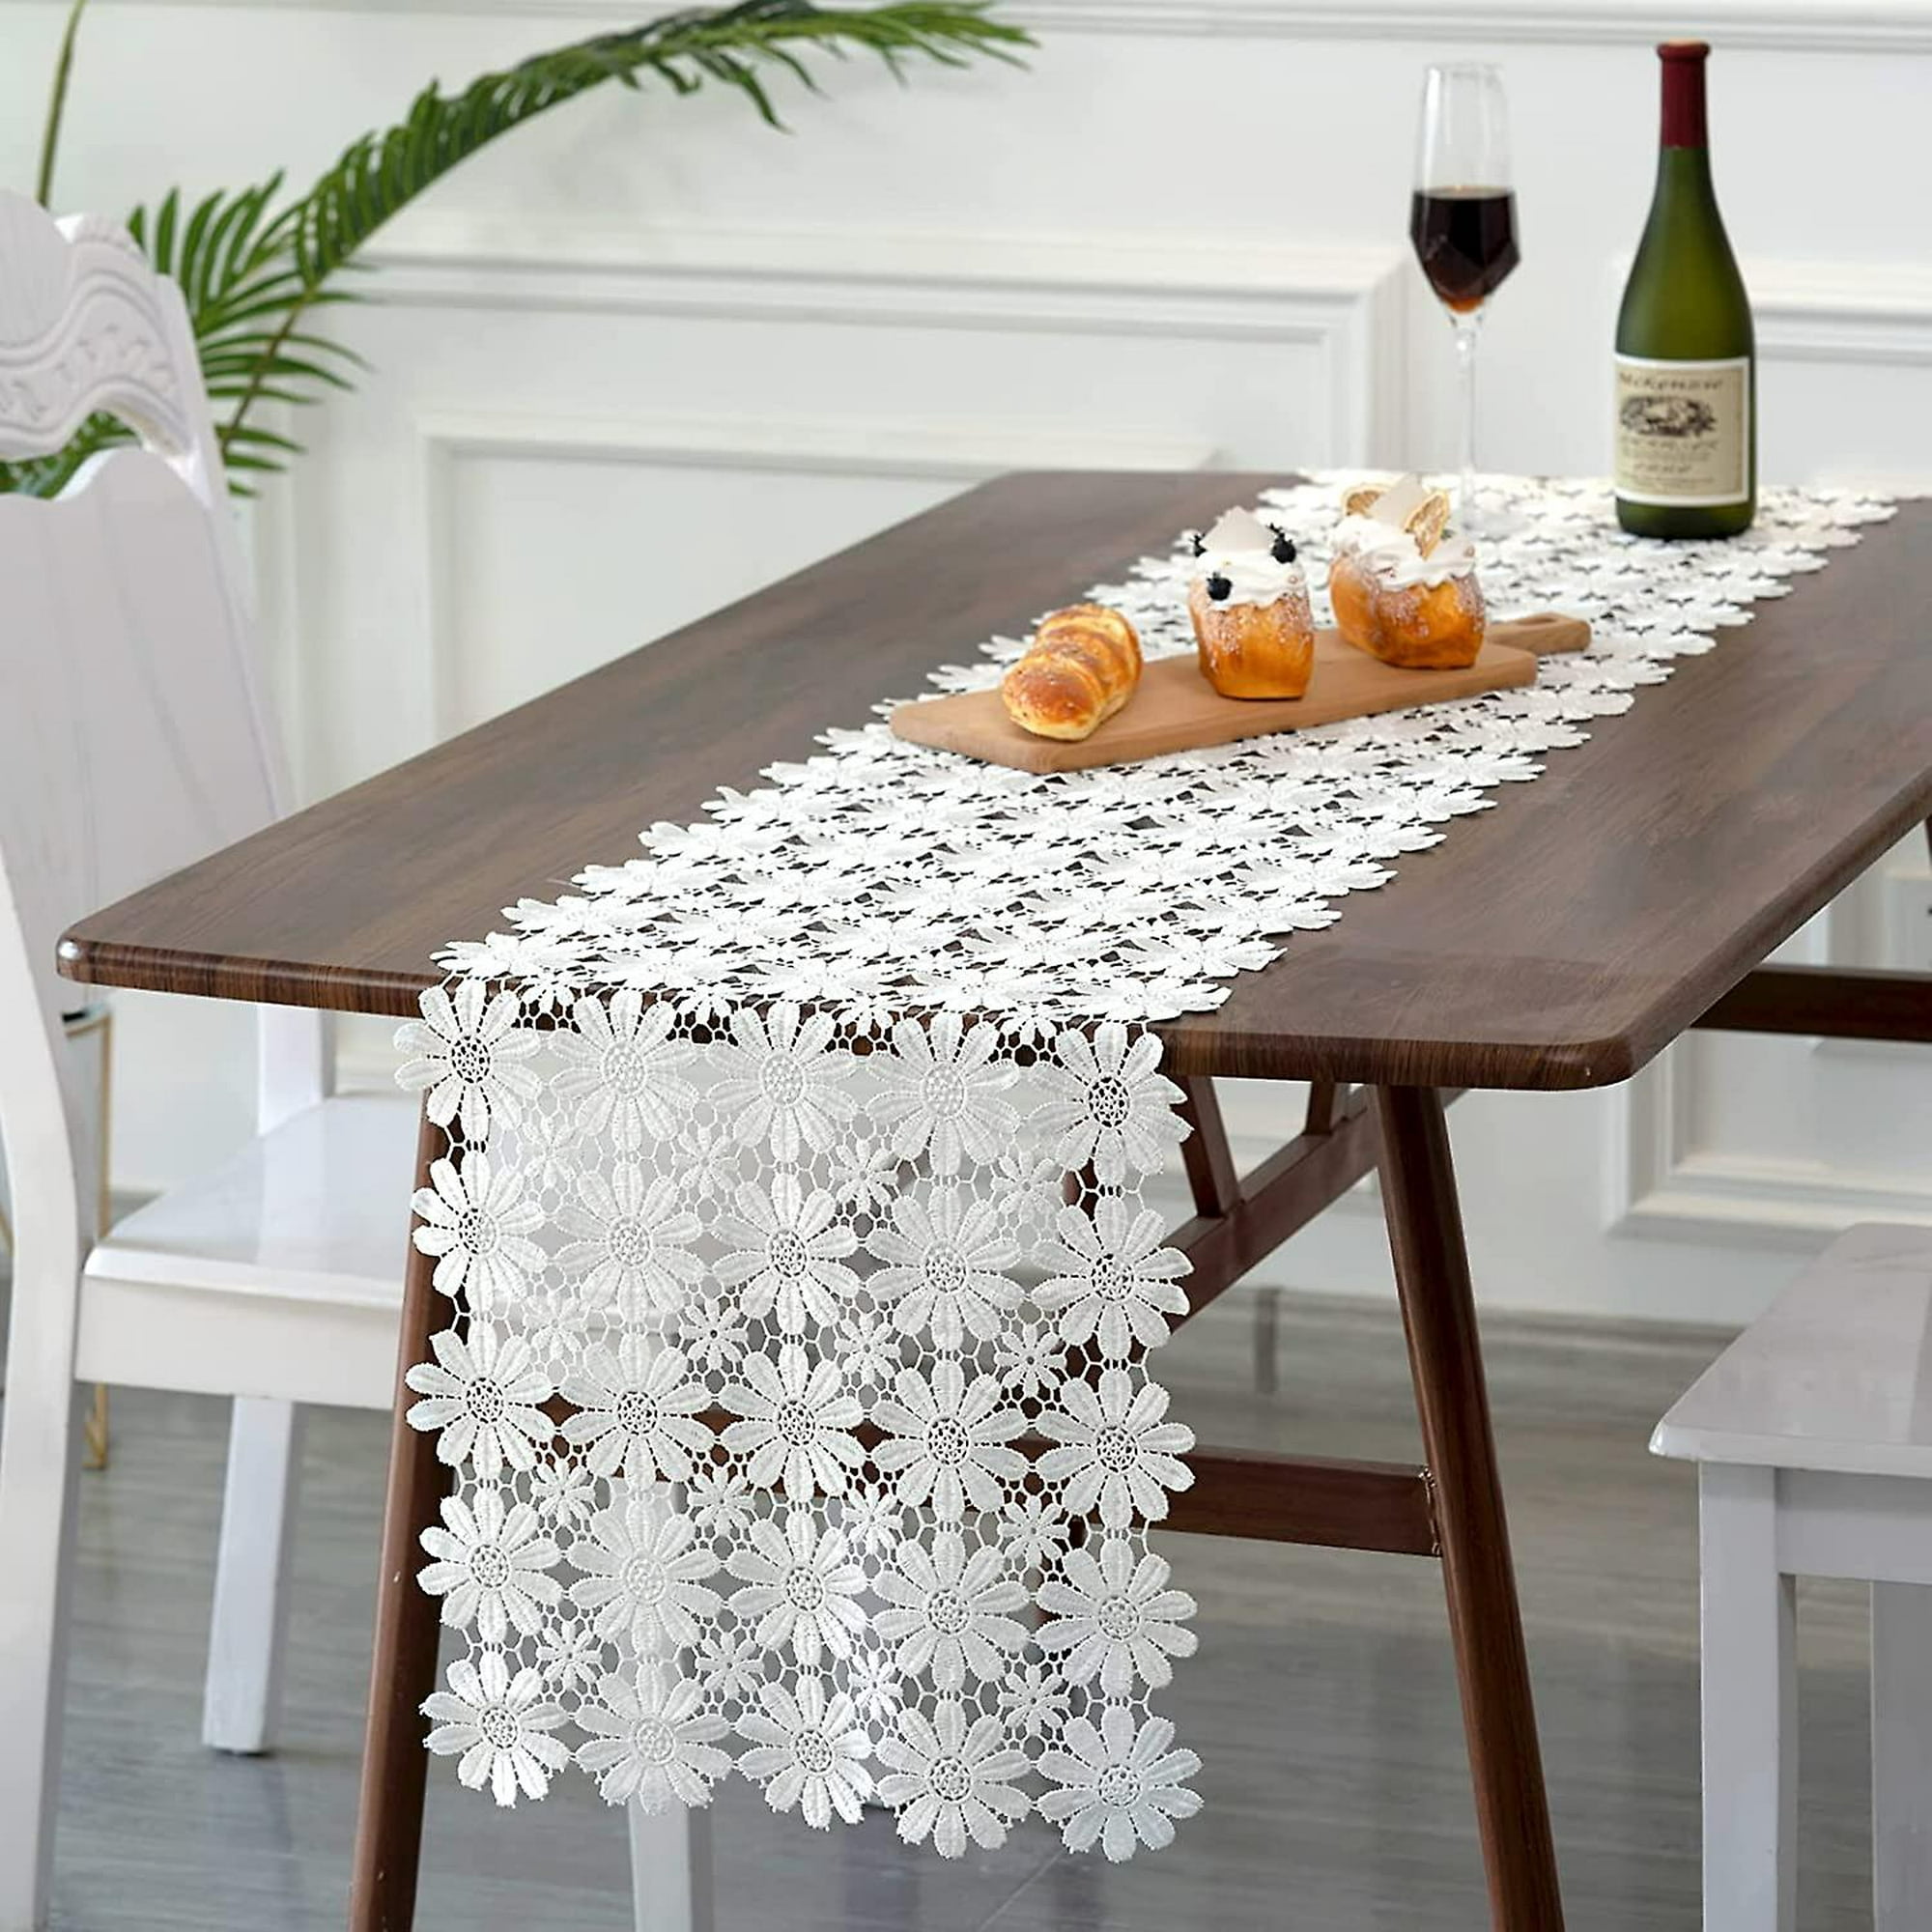 SUTAVIA Camino de mesa de encaje floral bordado blanco, bufanda de gasa,  camino de mesa rústico, decoración de mesa elegante y elegante, cubierta de